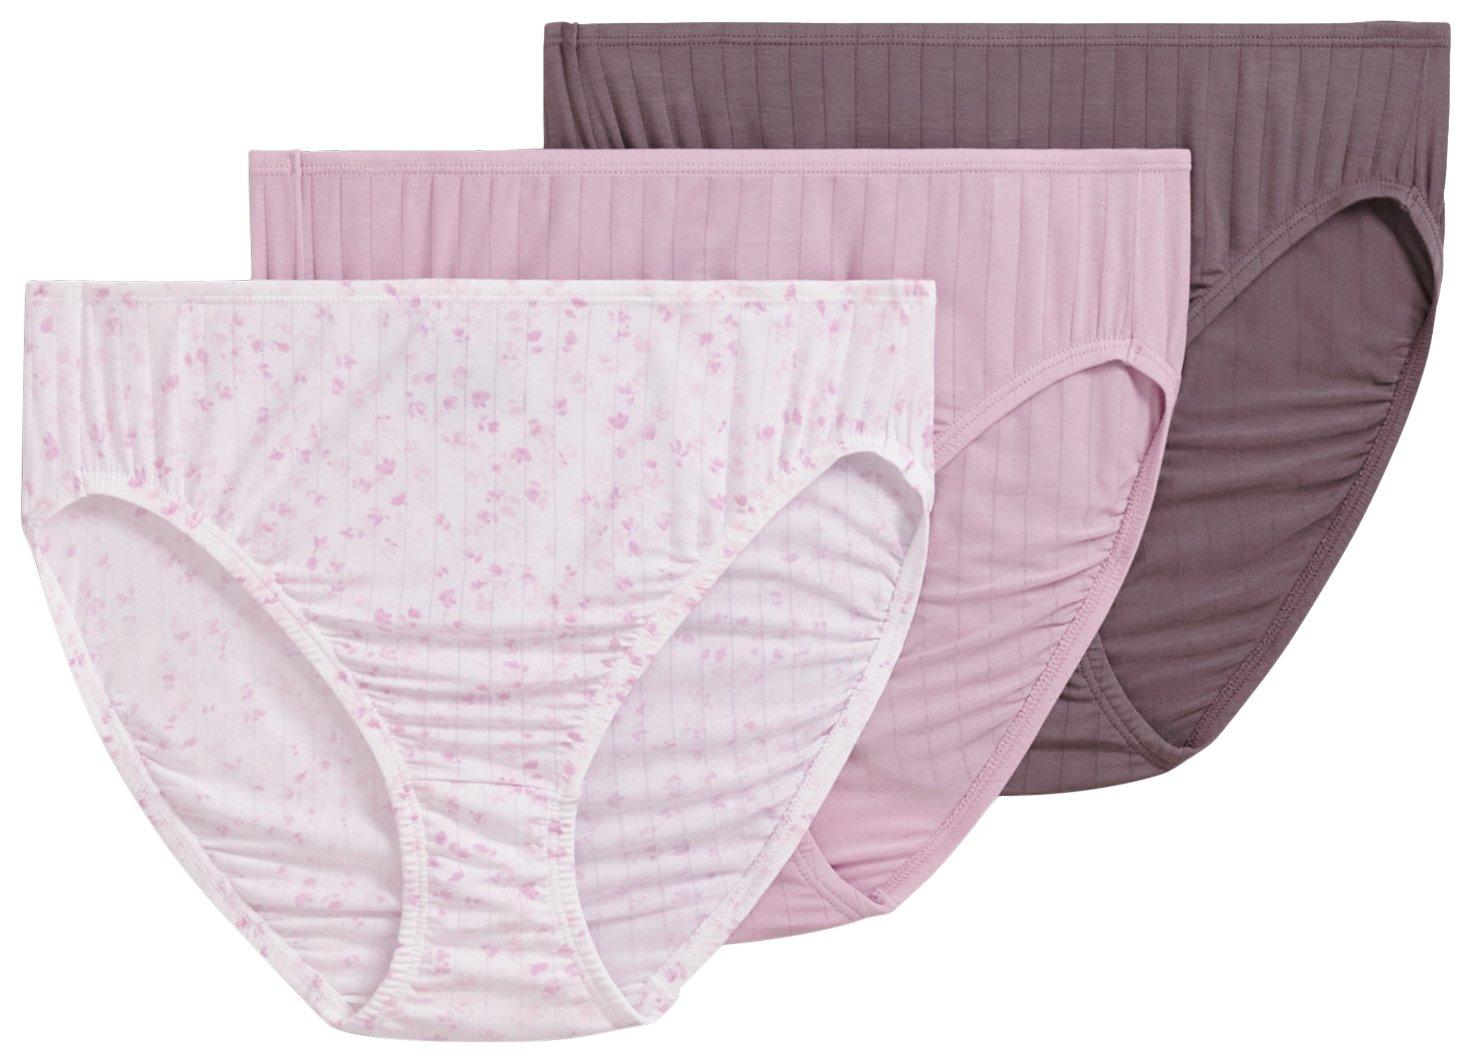 Jockey® Essentials Girls' Cotton Stretch Brief Panty- 3 Pack